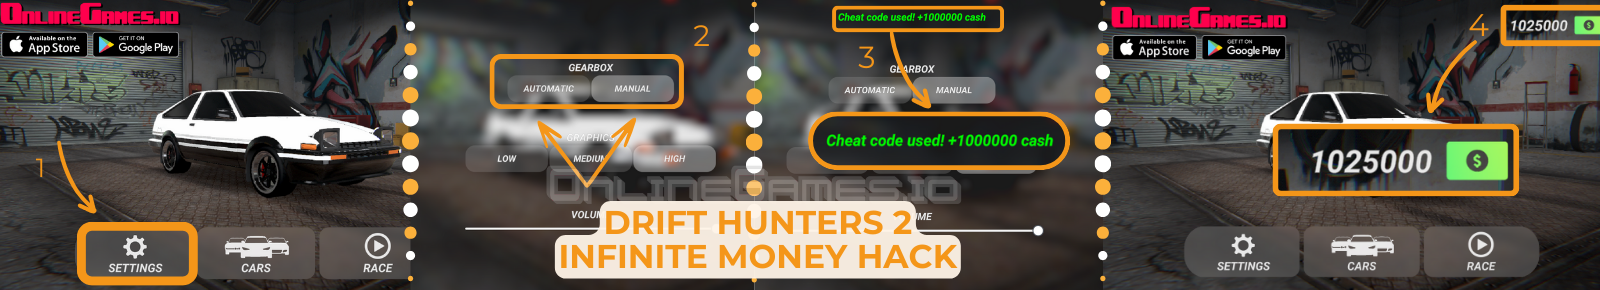 Drift Hunters 2 Infinite Money Hack